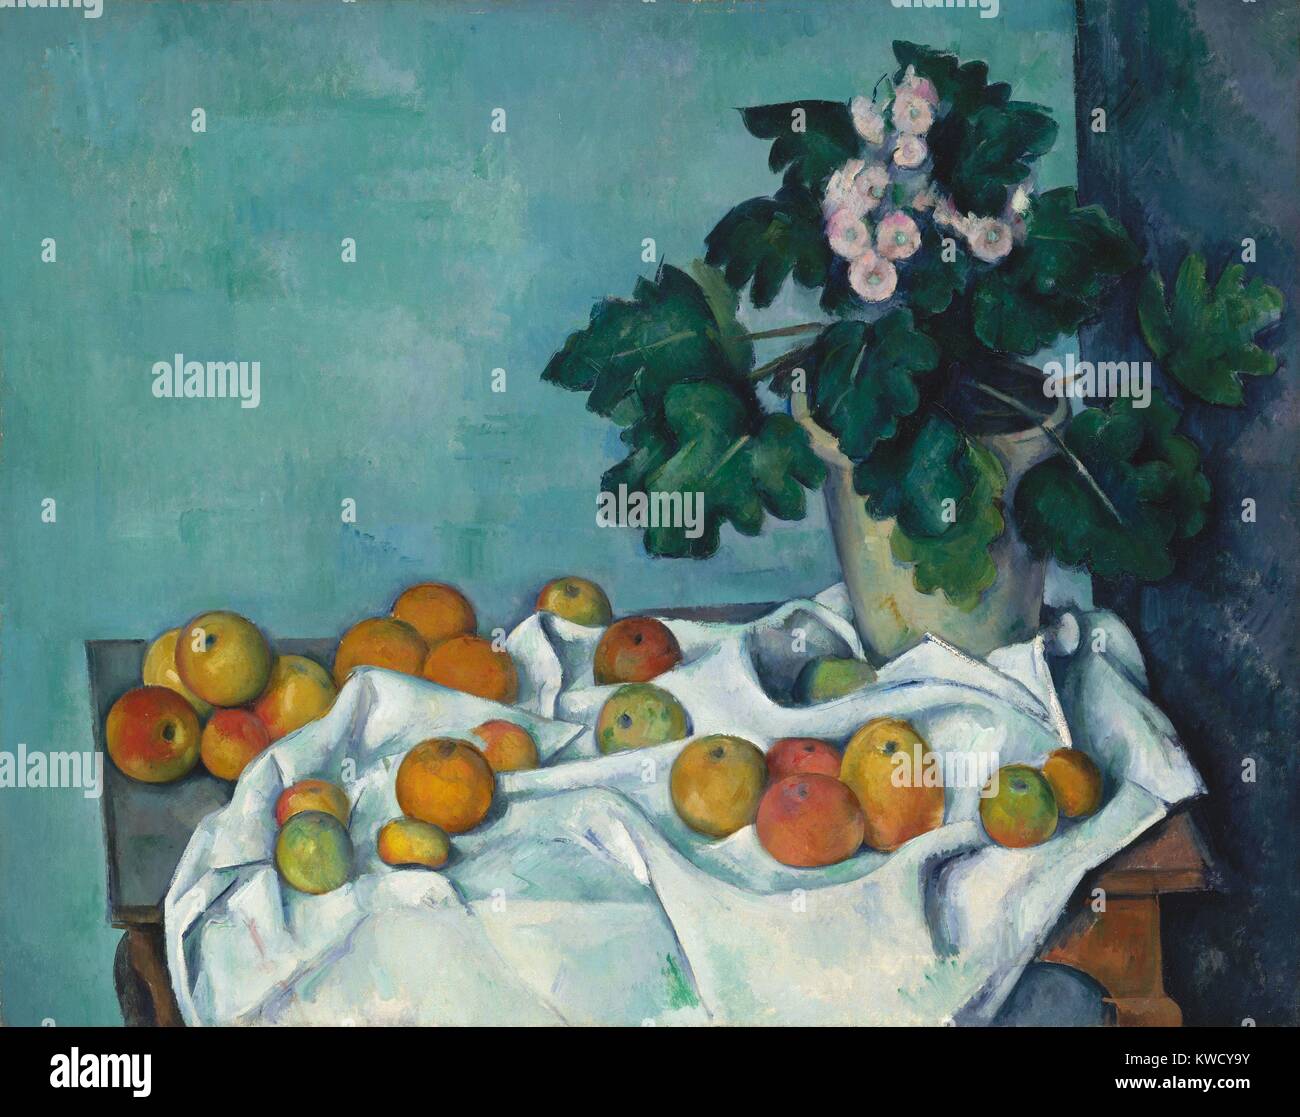 Bodegón con manzanas y una olla de Prímulas, por Paul Cezanne, 1890, Posimpresionismo francés. Monet, el maestro pintor impresionista, una vez propiedad de esta pintura (BSLOC 2017 5 23) Foto de stock